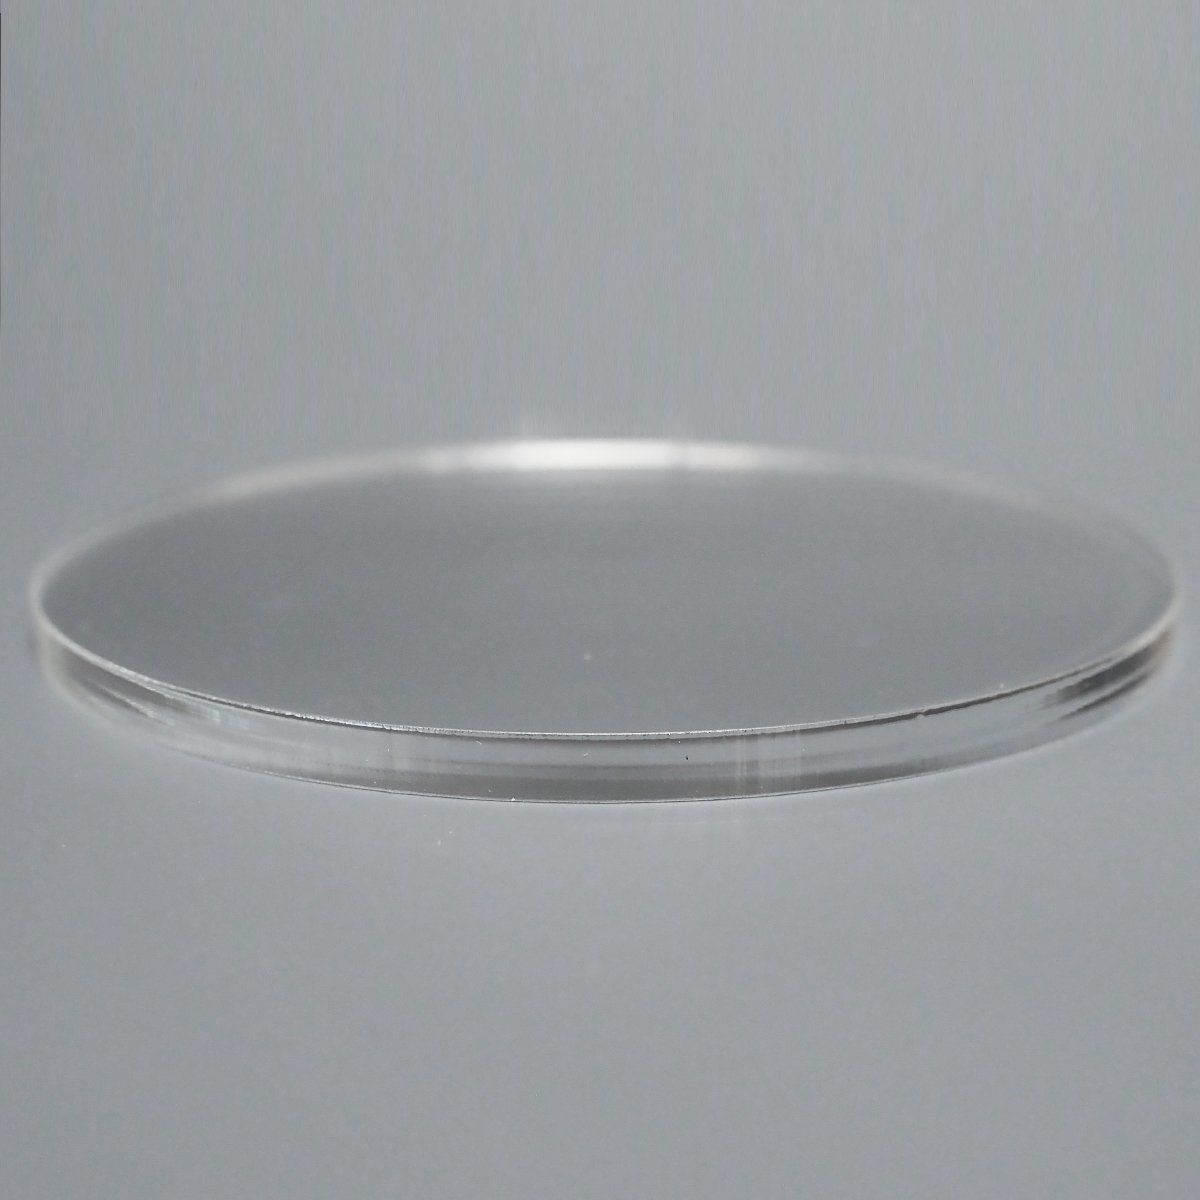 透明 アクリル 5mm厚 円形 直径10cm 2個セット